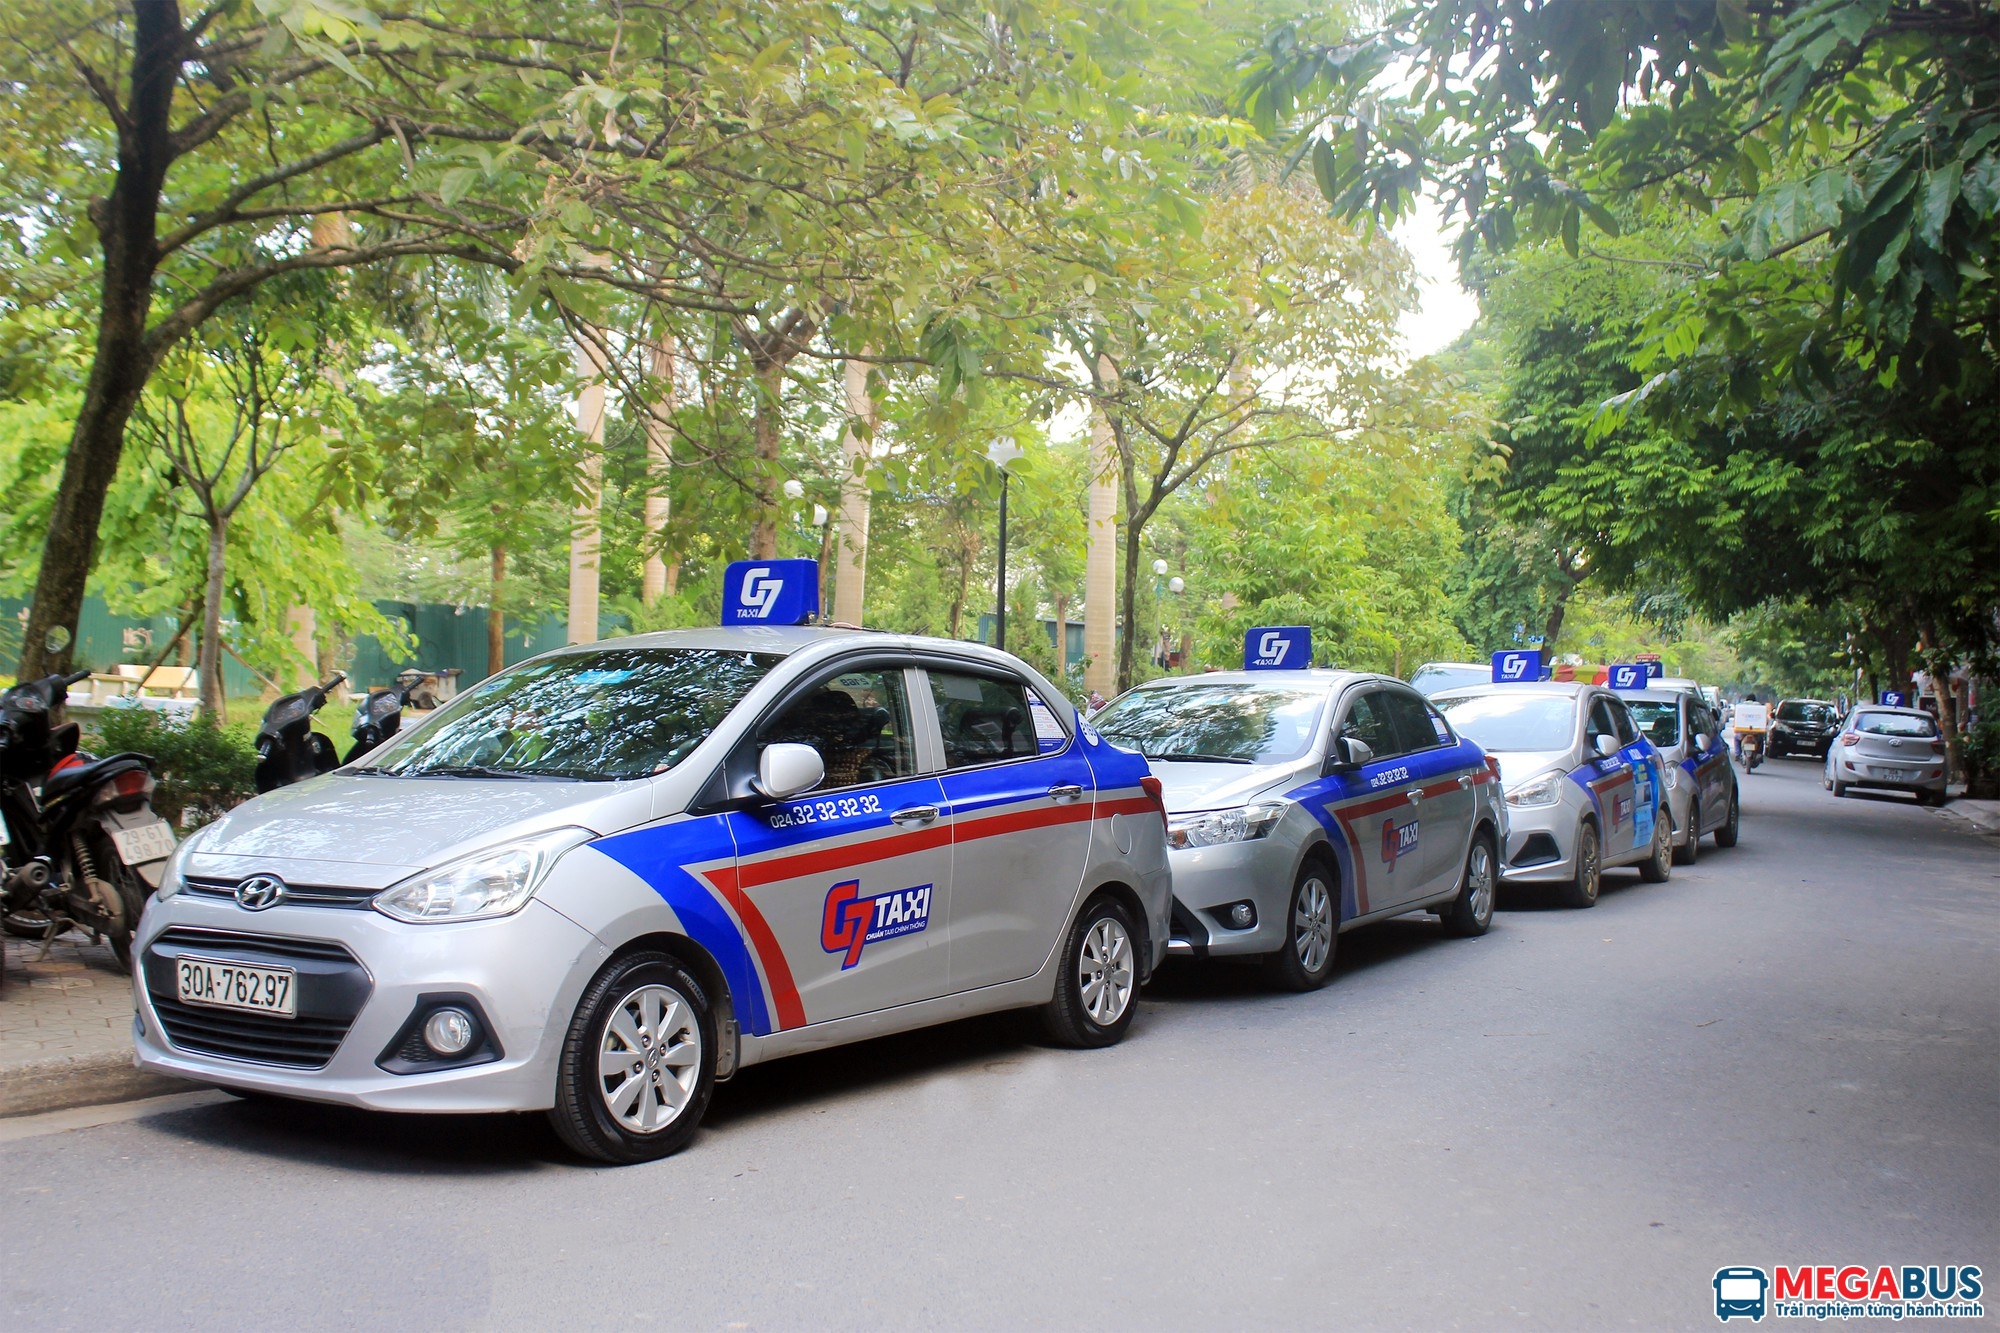 Danh sách SĐT các hãng taxi tại Hà Đông, Hà Nội